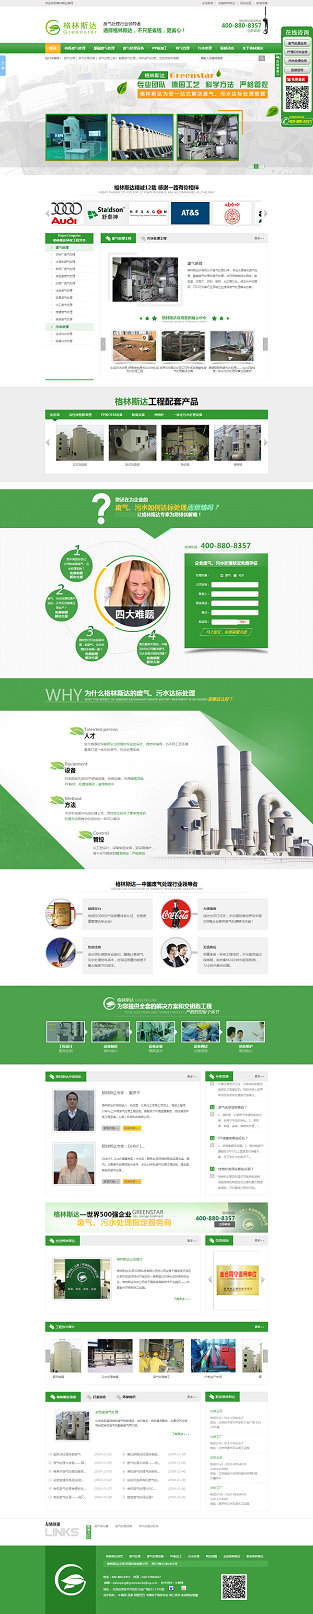 北京格林斯达环保科技营销型网站案例